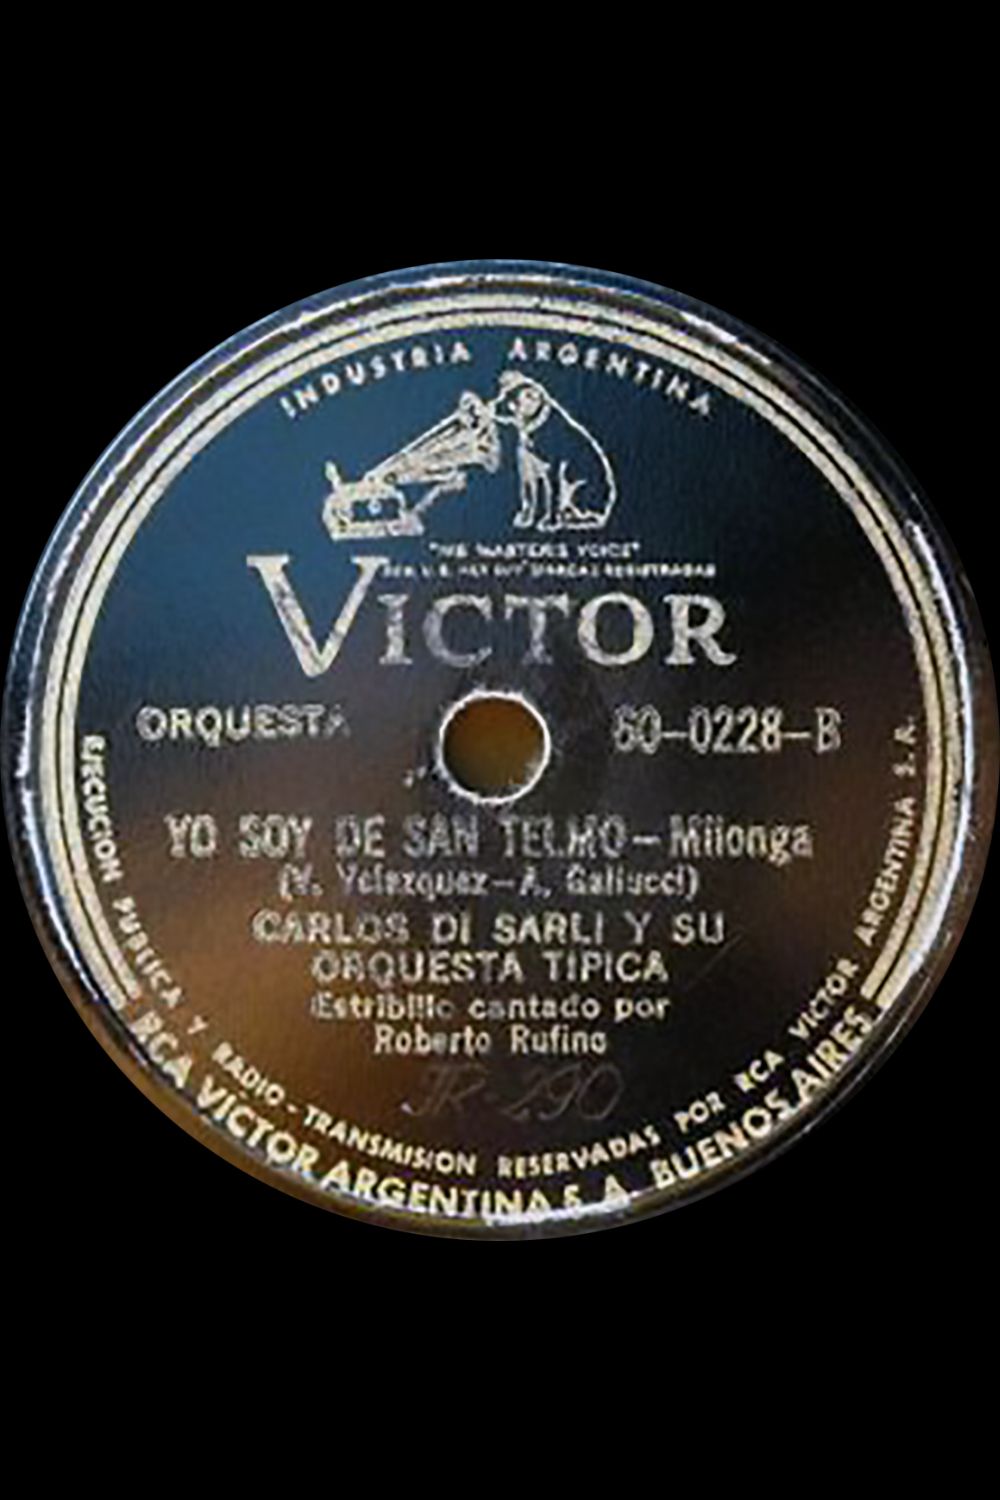 "Yo soy de San Telmo", Argentine Tango music vinyl disc.